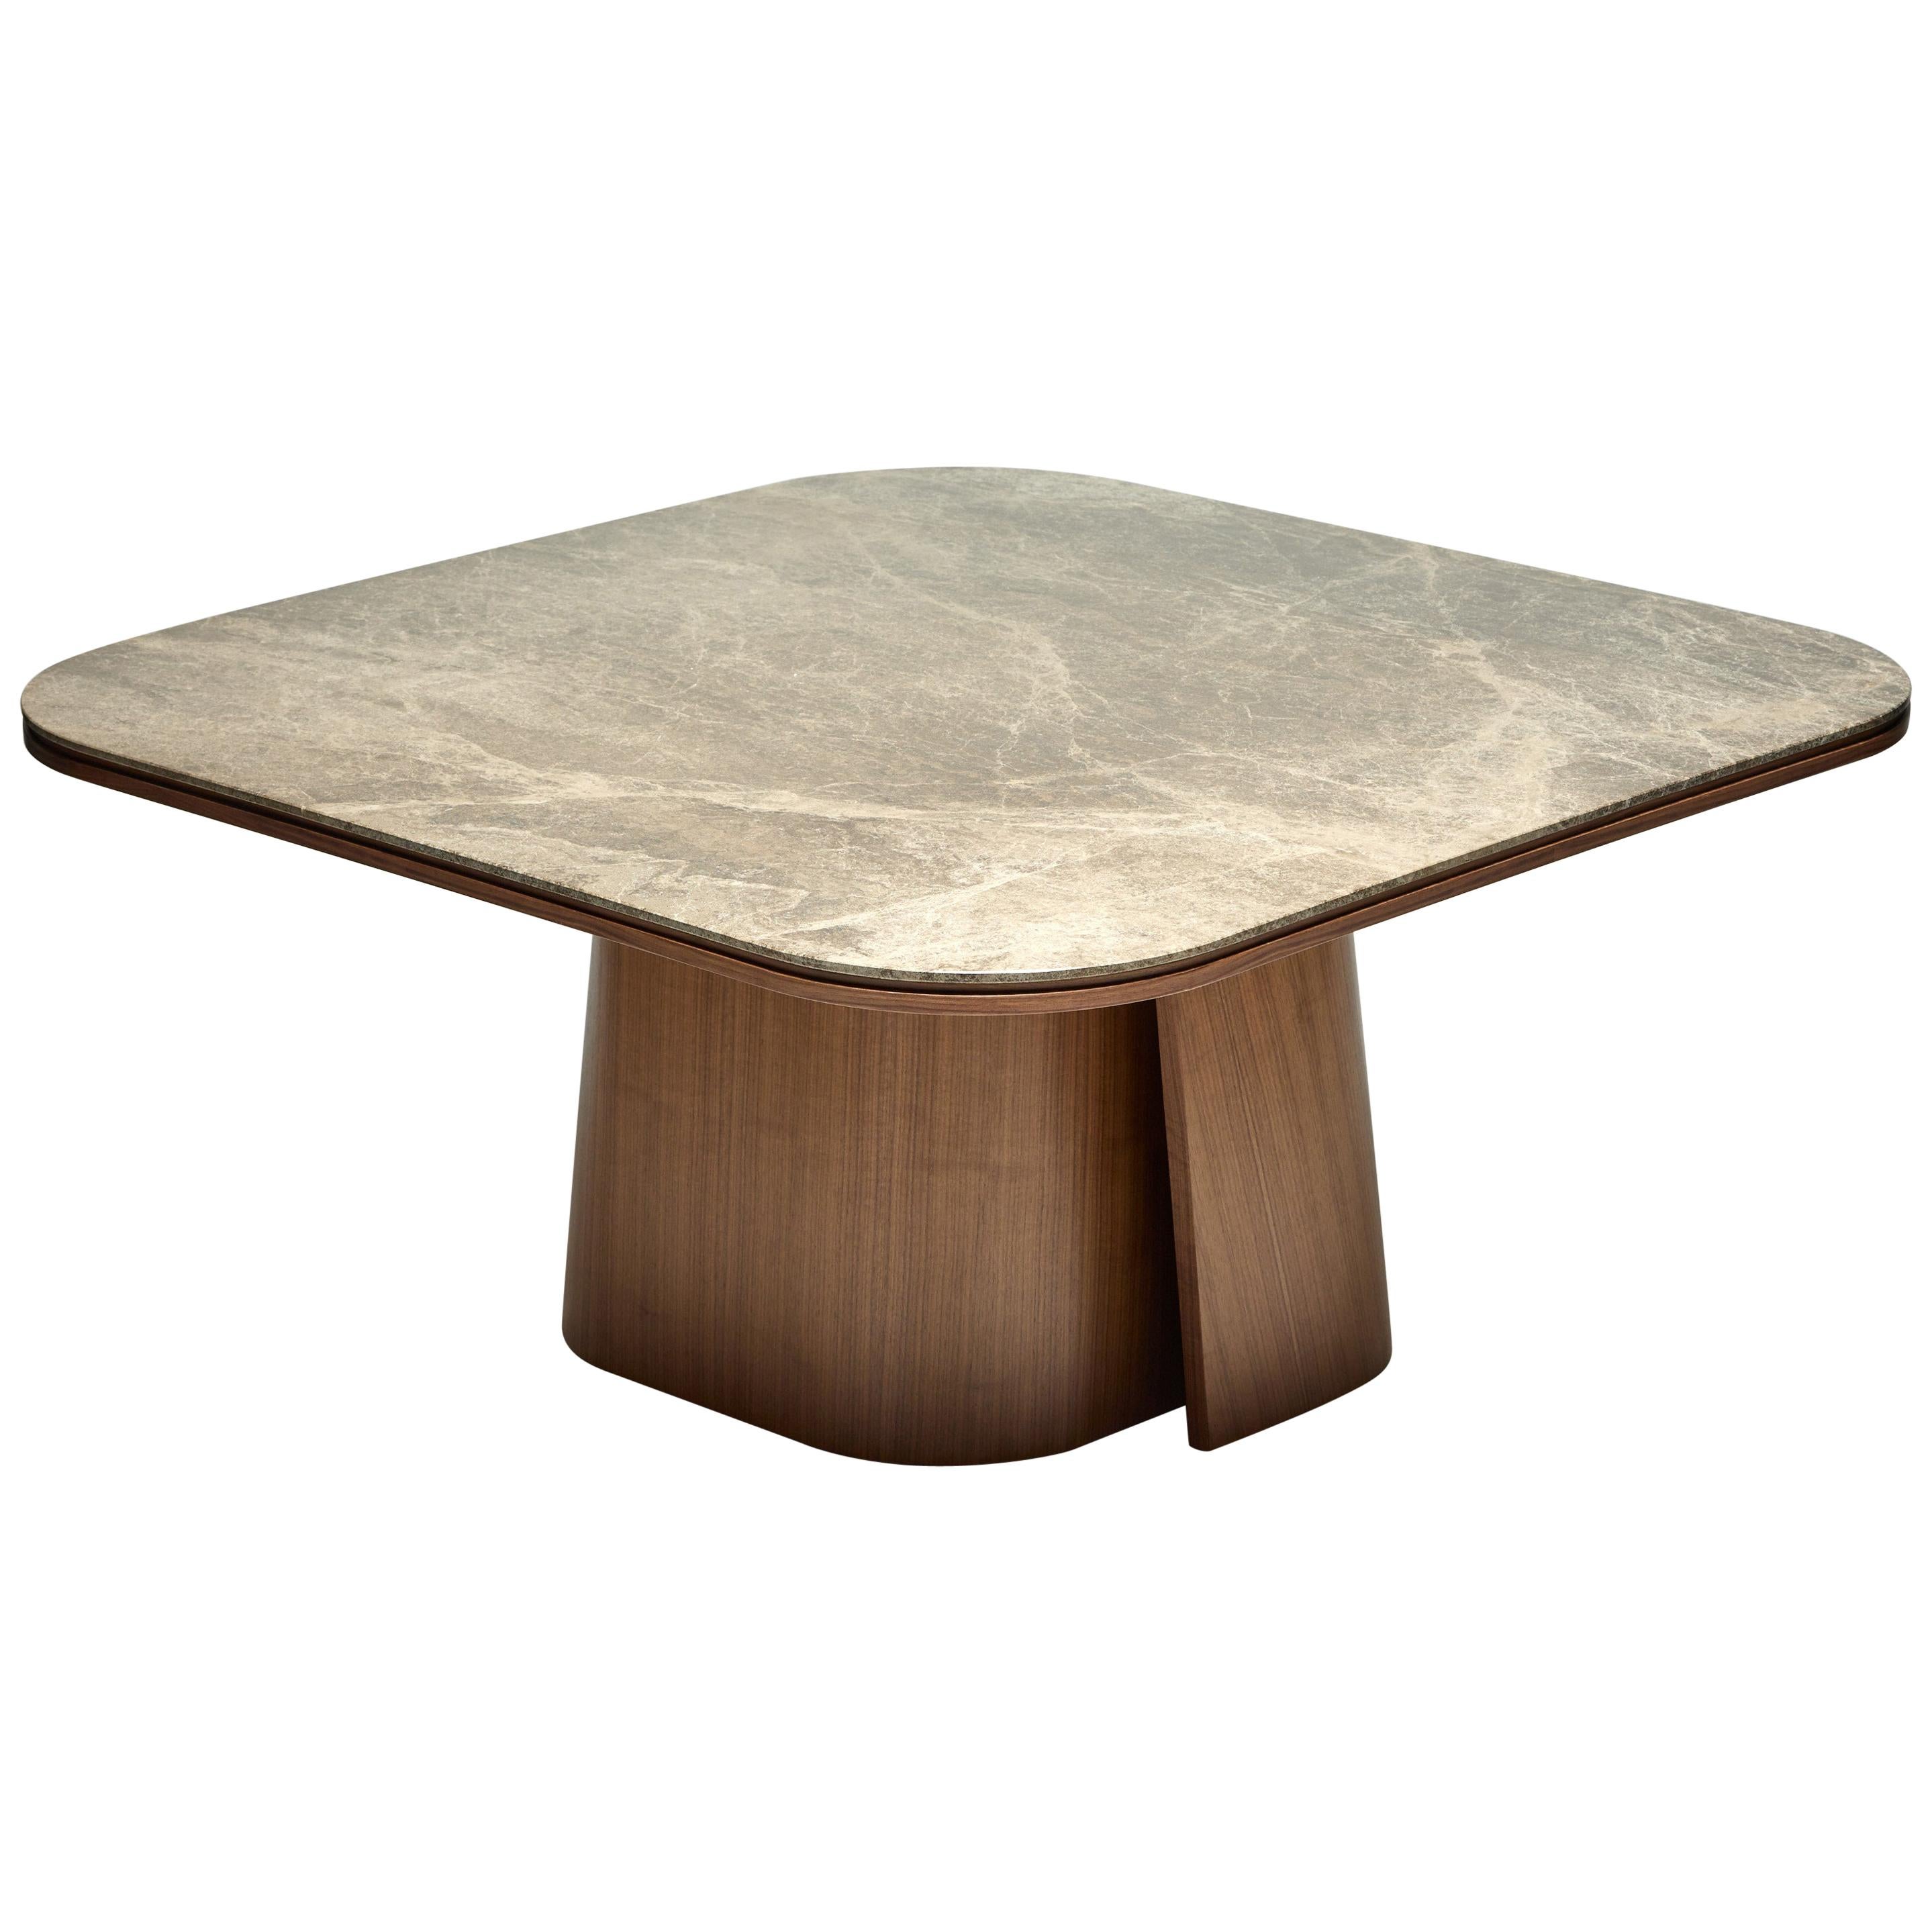 Dining Table, OOMA, by Reda Amalou Design, 2020, Emperador Marble, 180 cm